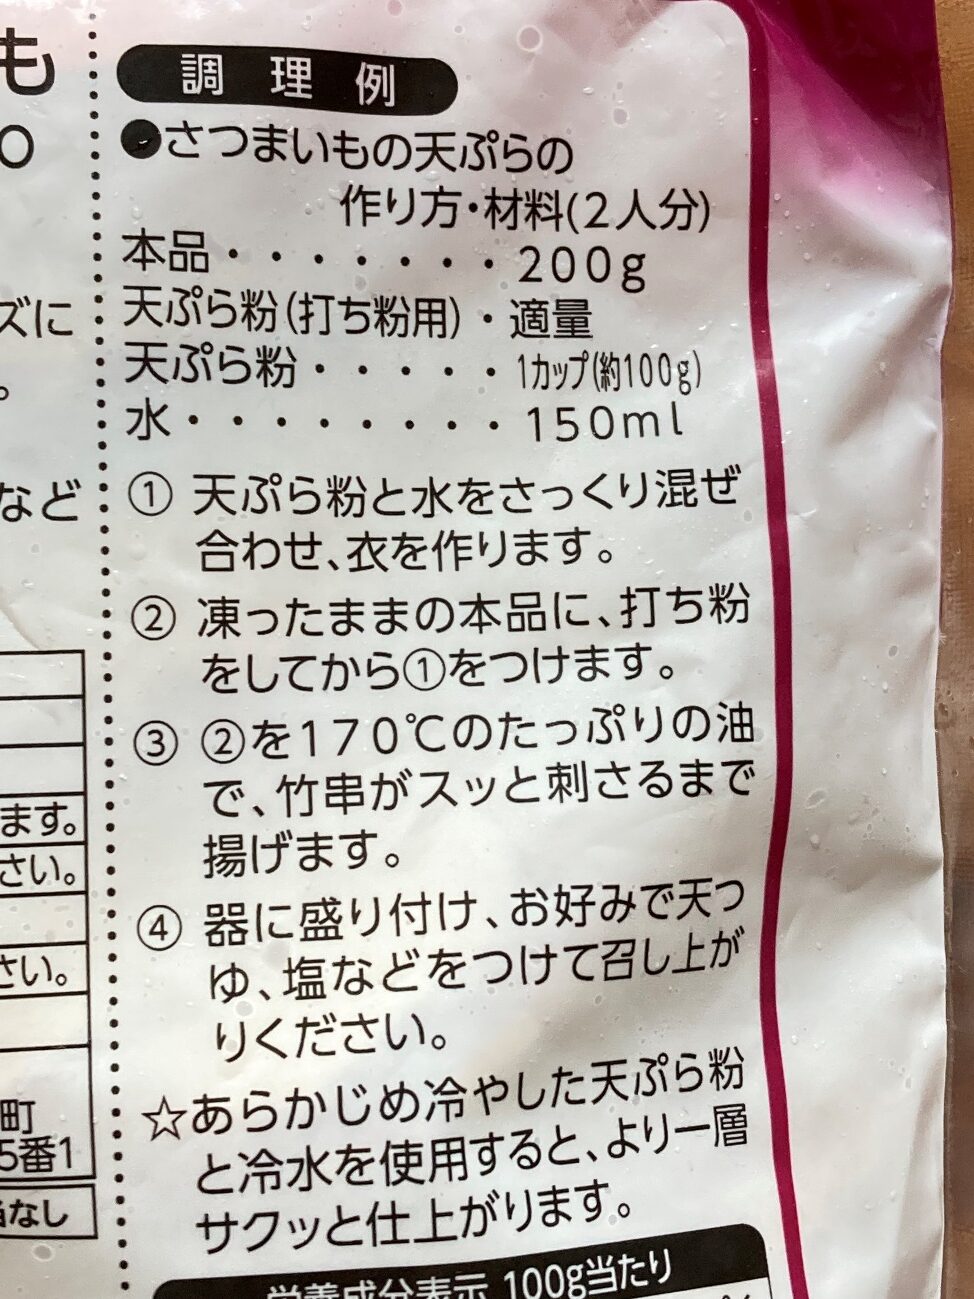 業務スーパーの天ぷら用さつまいものパッケージ裏面に記載されている調理例